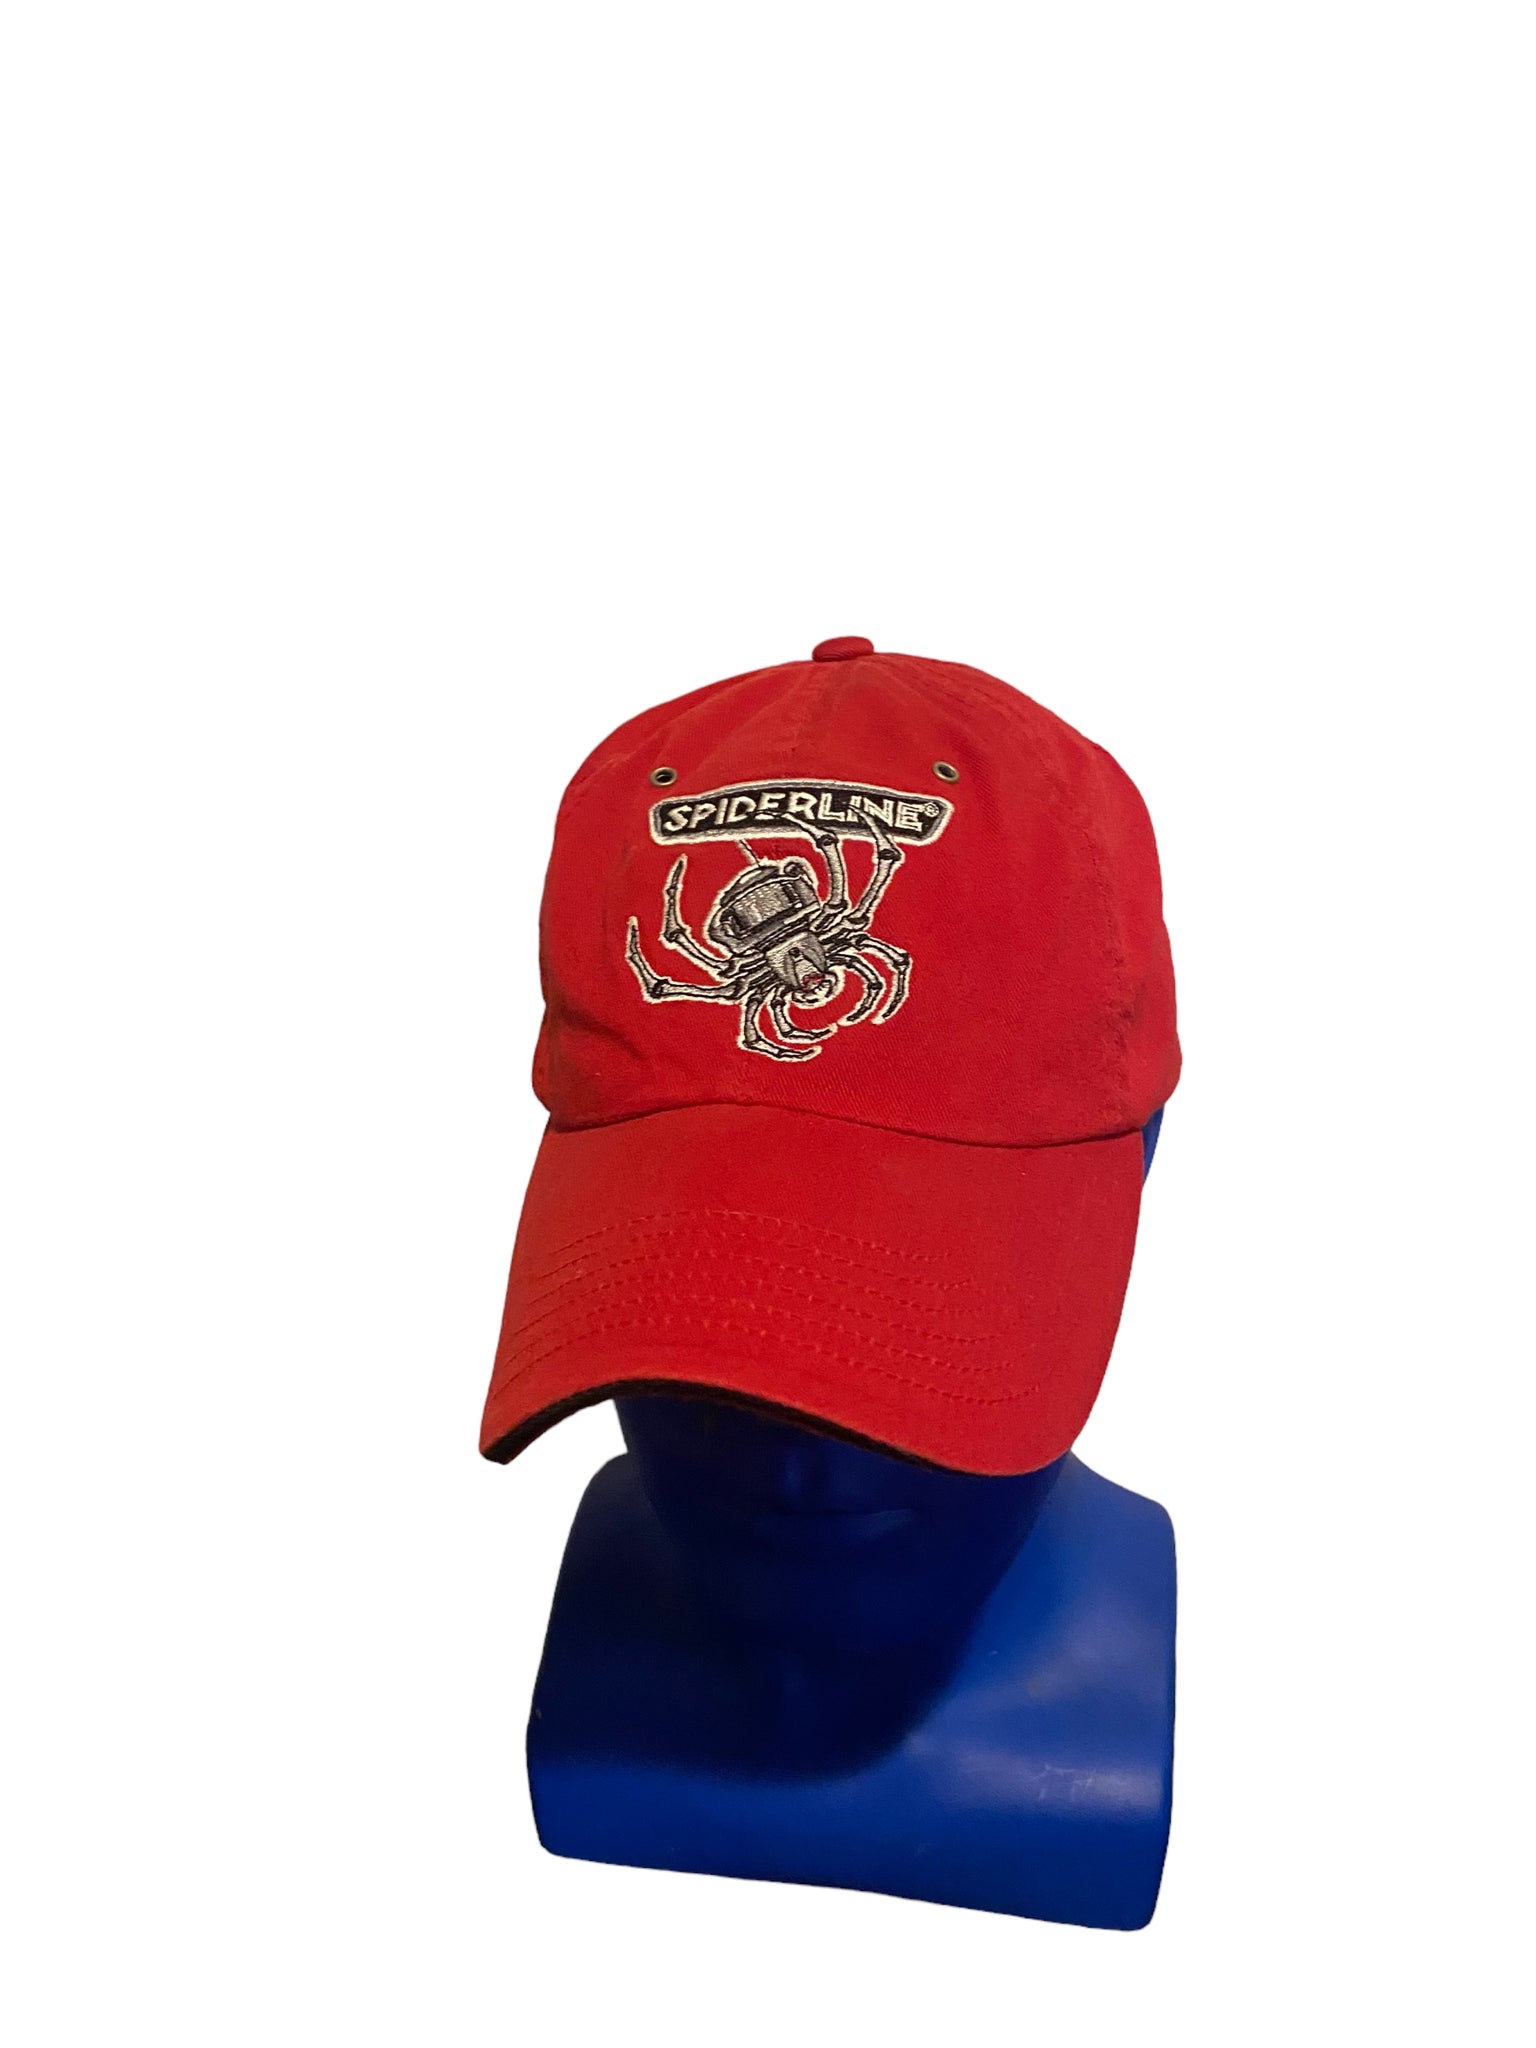 Spiderline Fishing Reels Embroidered Spider Logo Red Adjustable Strap Dad Hat